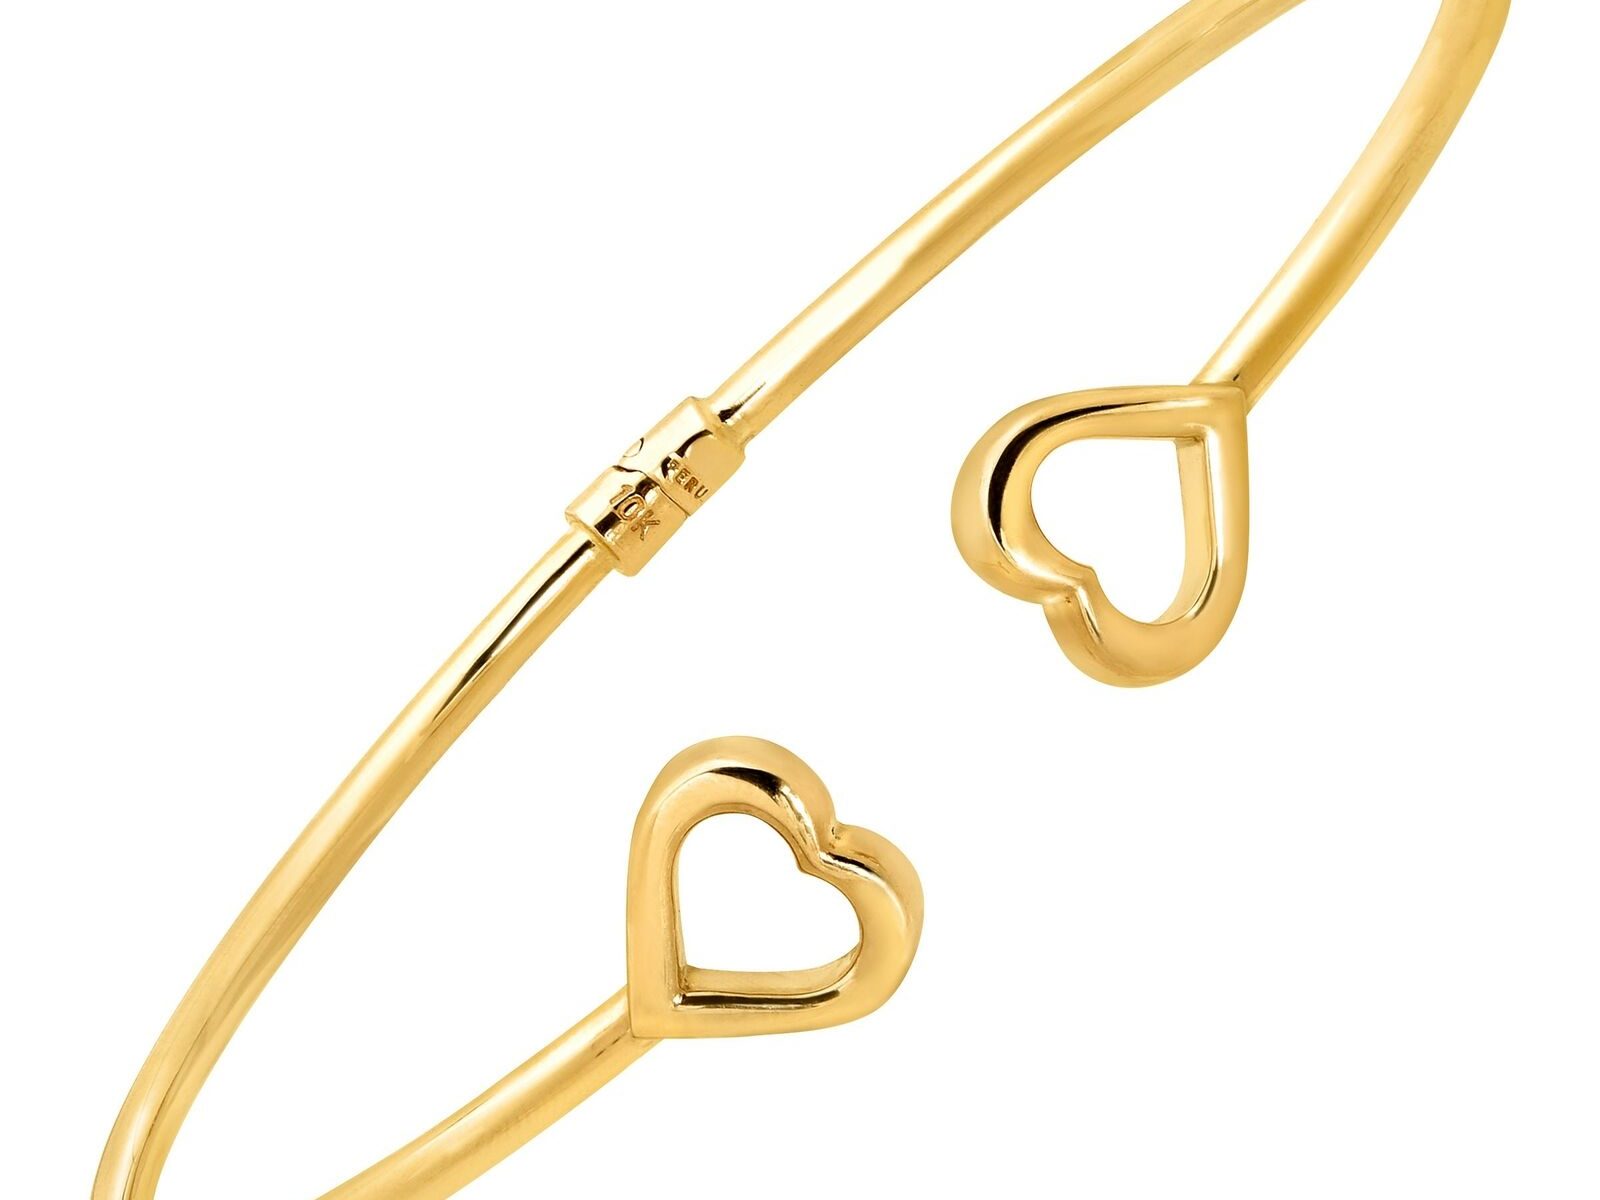 Eternity Gold Sideways Heart Edge Cuff Bracelet in 10K Gold